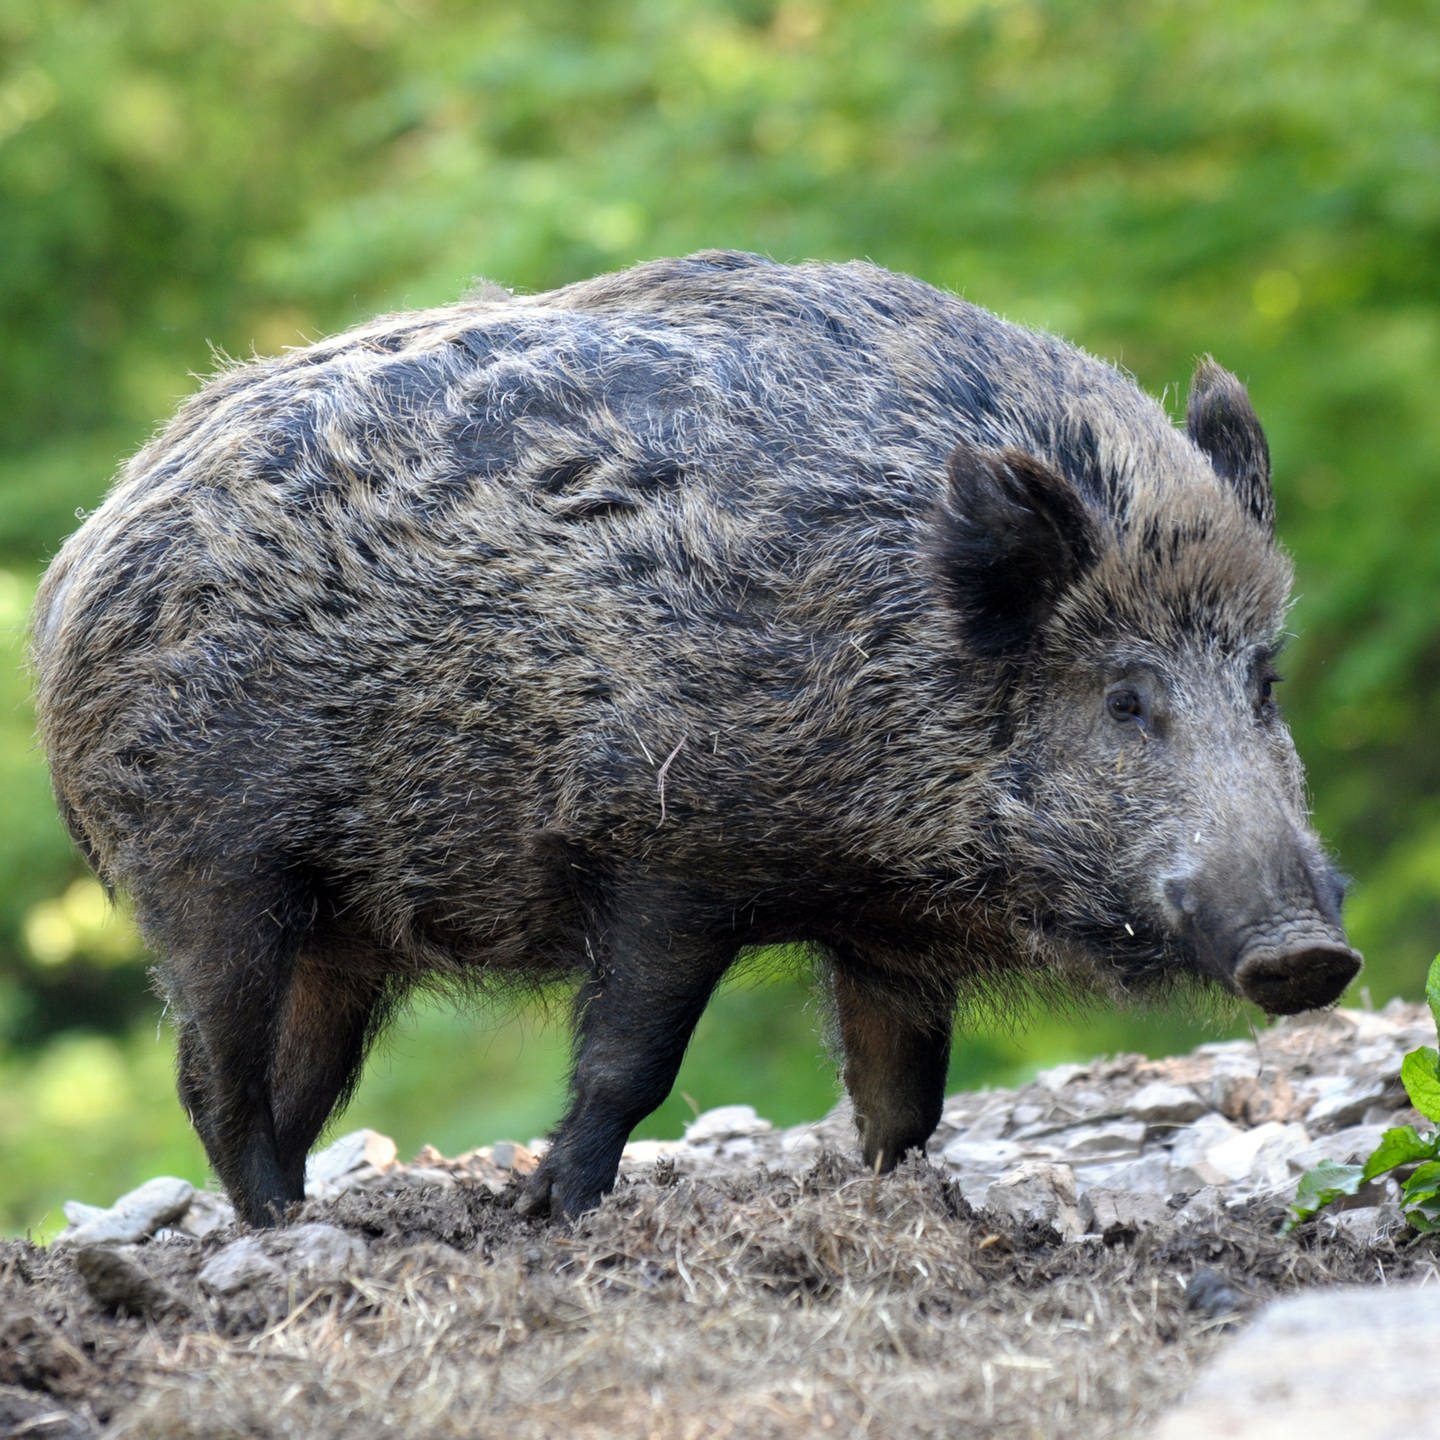 Tiere - Kleinmachnow - Experte: Von gesundem Wildschwein geht keine Gefahr  aus - Wissen - SZ.de